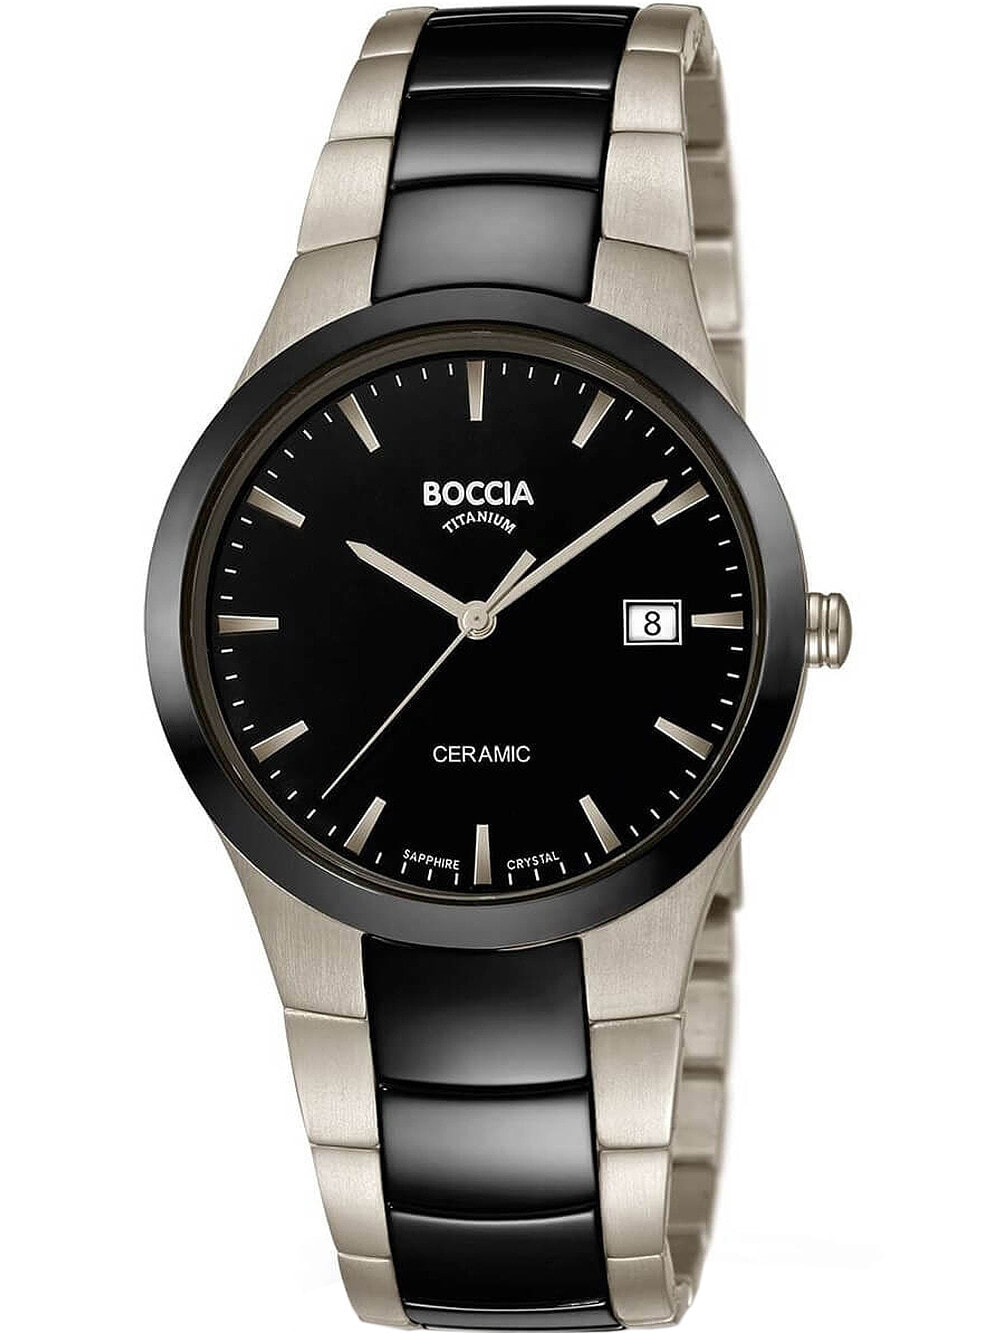 Мужские наручные часы с серебряным черным браслетом Boccia 3639-01 mens watch ceramic titanium 39mm 5ATM